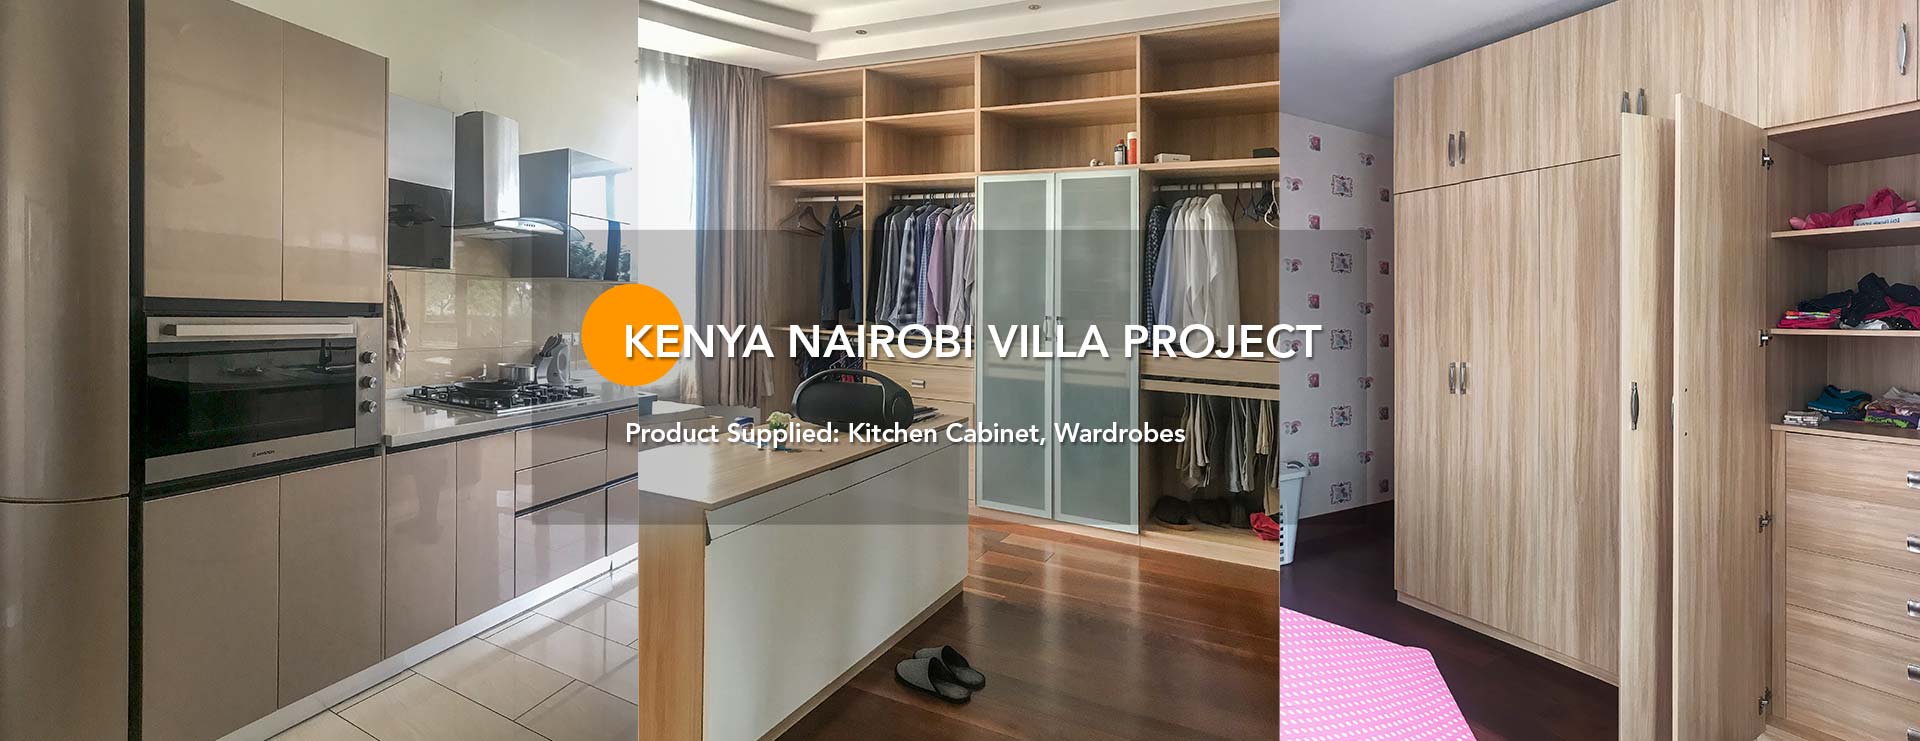 kenya-nairobi-villa-project01-banner